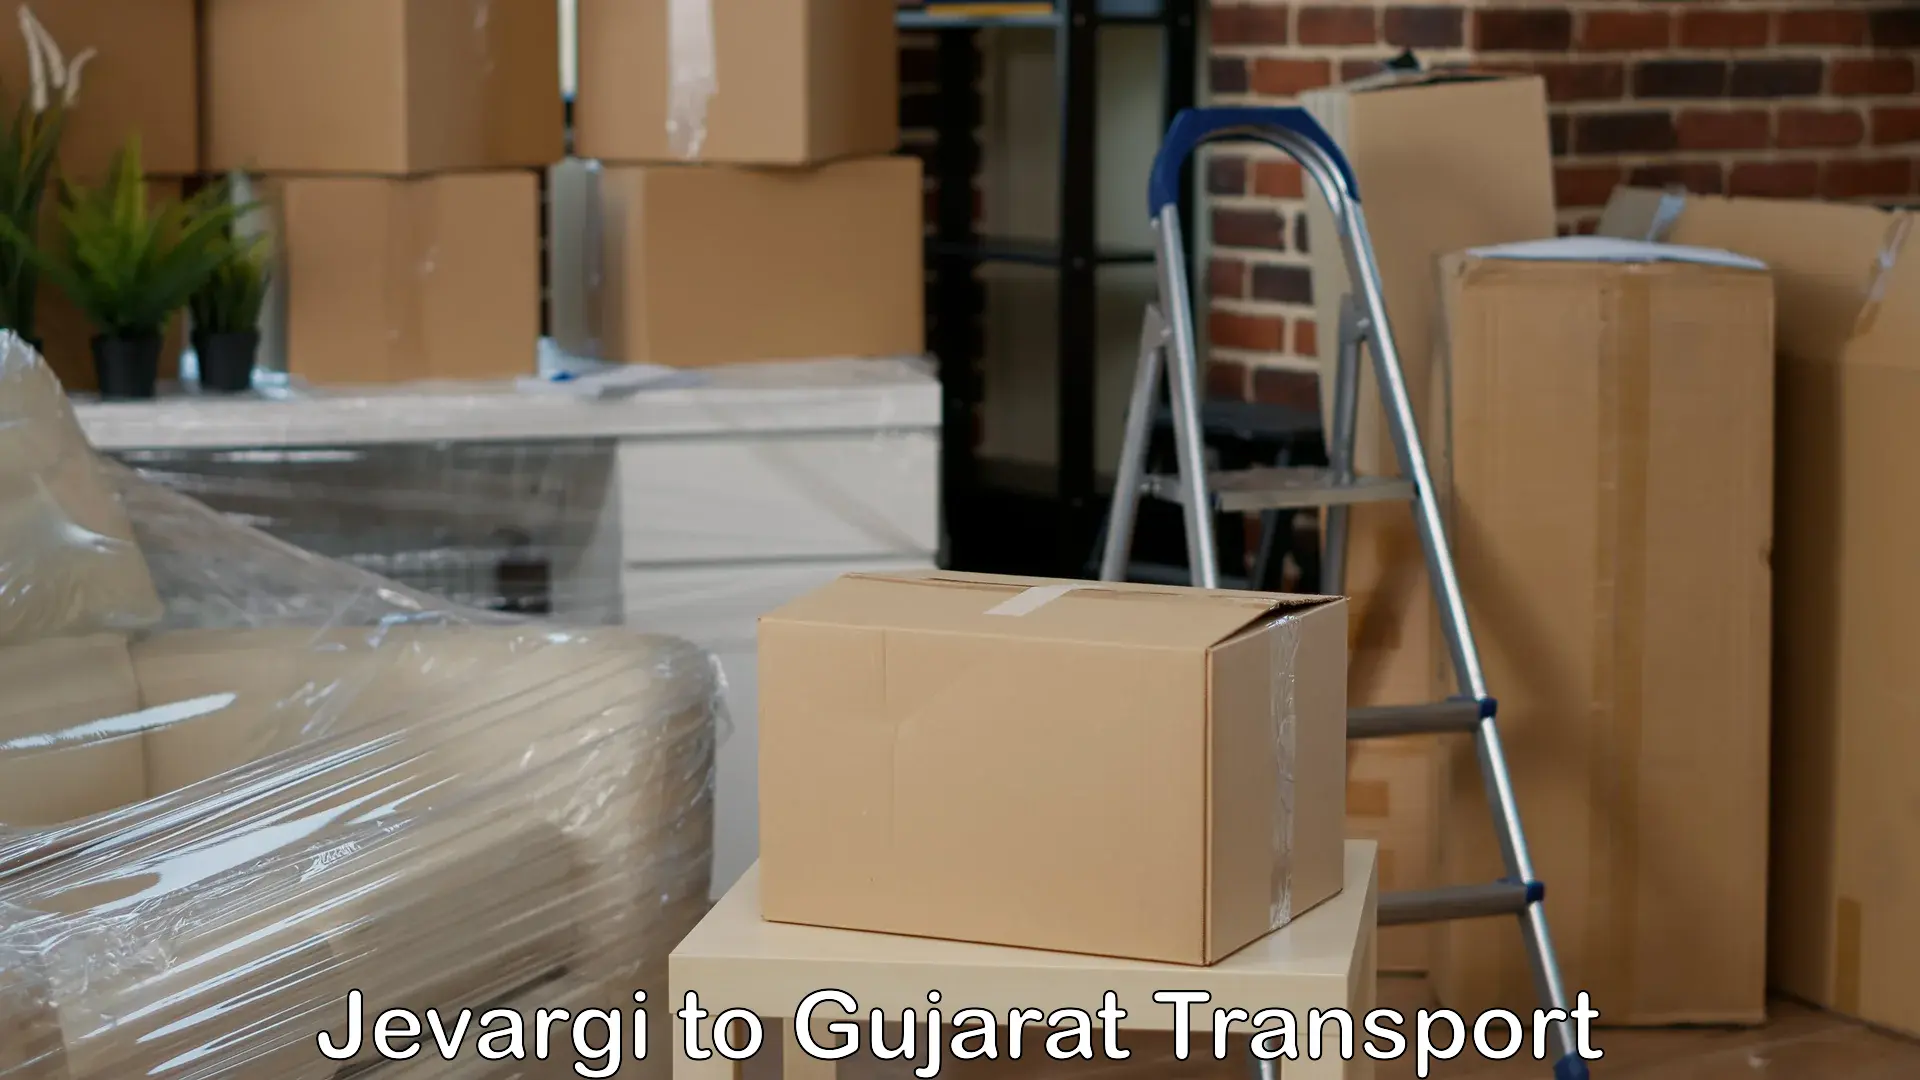 Furniture transport service Jevargi to Dhoraji